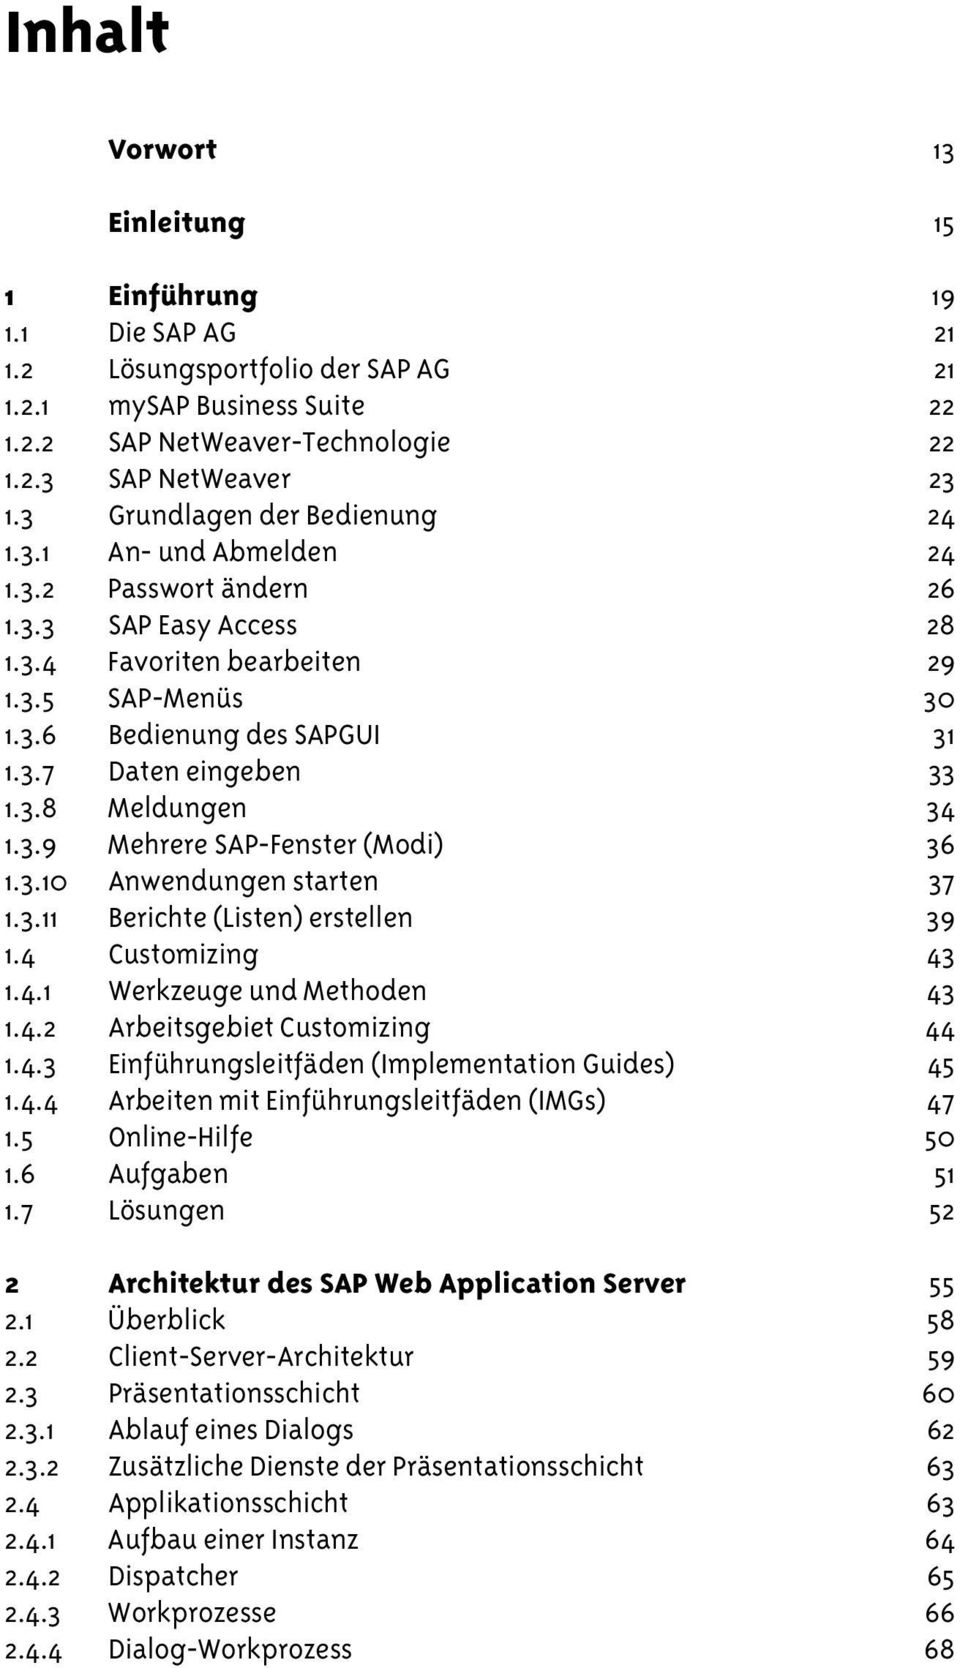 3.8 Meldungen 34 1.3.9 Mehrere SAP-Fenster (Modi) 36 1.3.10 Anwendungen starten 37 1.3.11 Berichte (Listen) erstellen 39 1.4 Customizing 43 1.4.1 Werkzeuge und Methoden 43 1.4.2 Arbeitsgebiet Customizing 44 1.